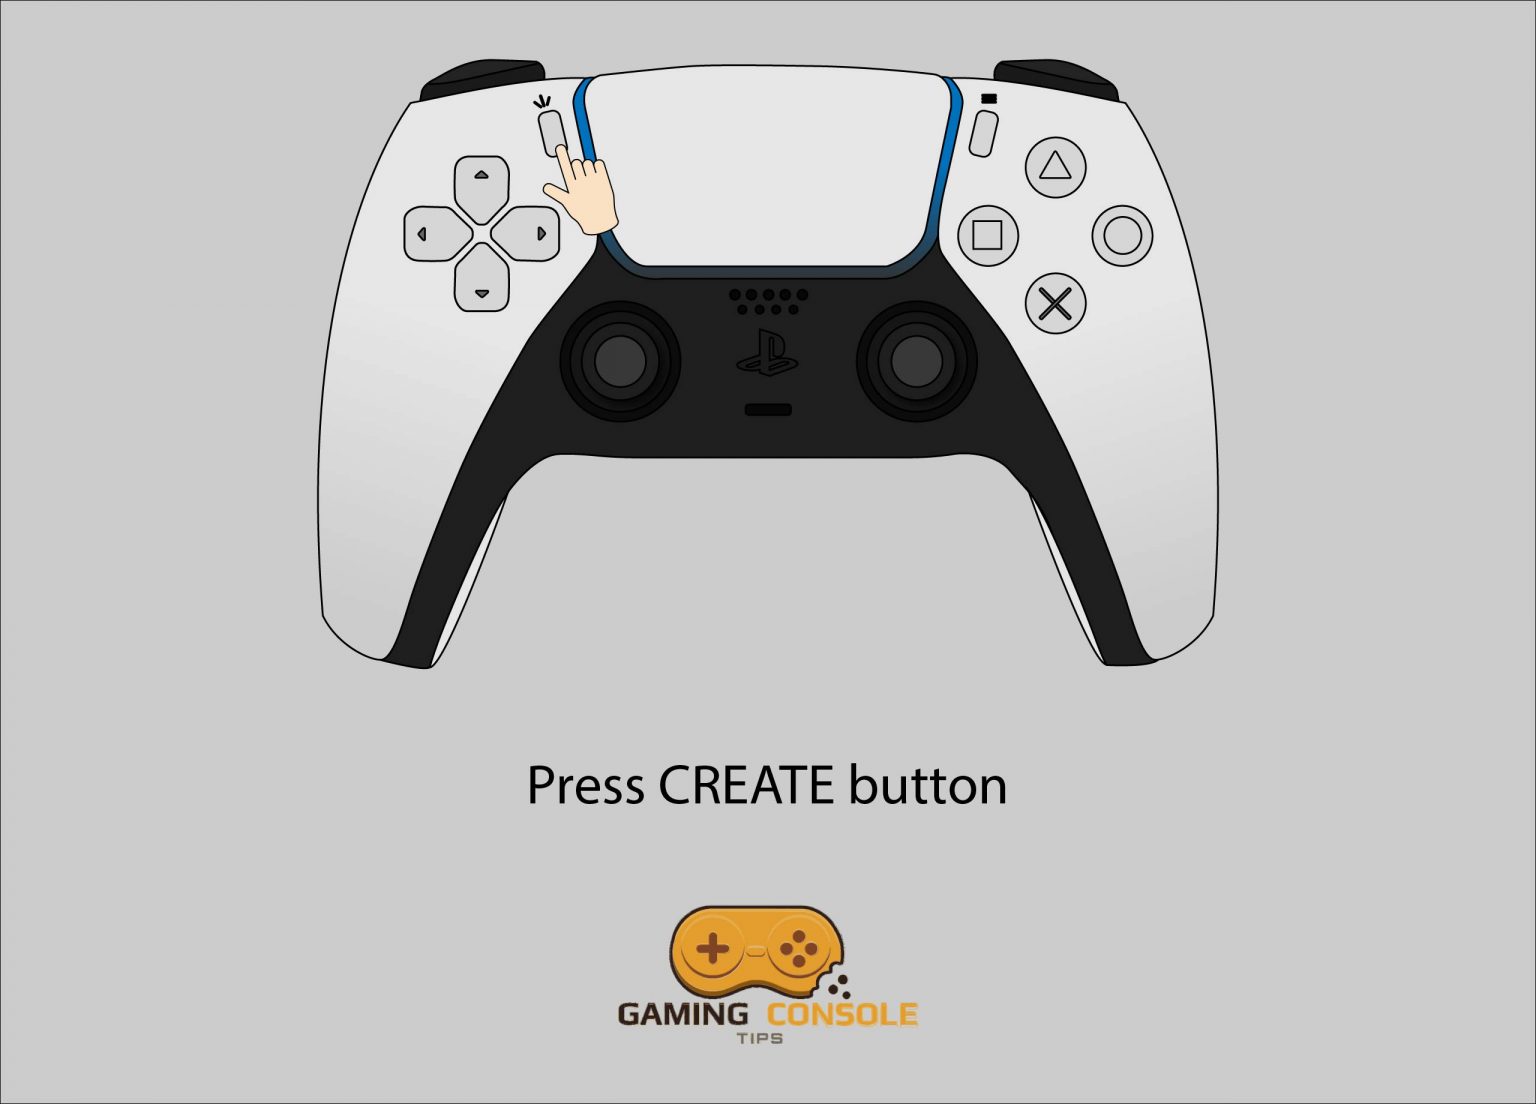 Create button on DualSense controller